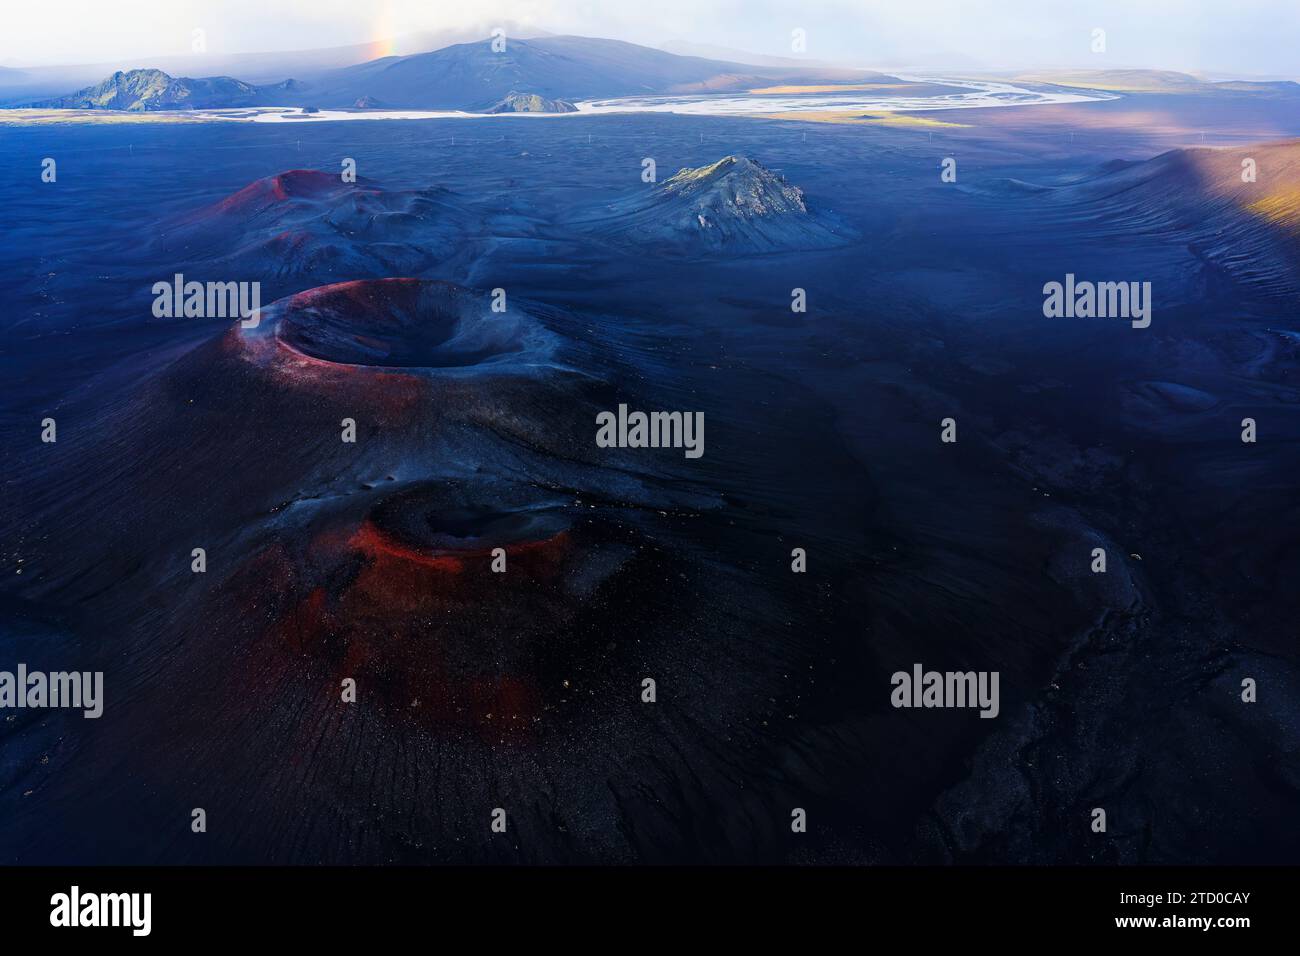 Una ripresa aerea cattura le consistenze e i colori drammatici del terreno vulcanico dell'Islanda, con formazioni rocciose e sfumature sottili sotto un vasto cielo Foto Stock